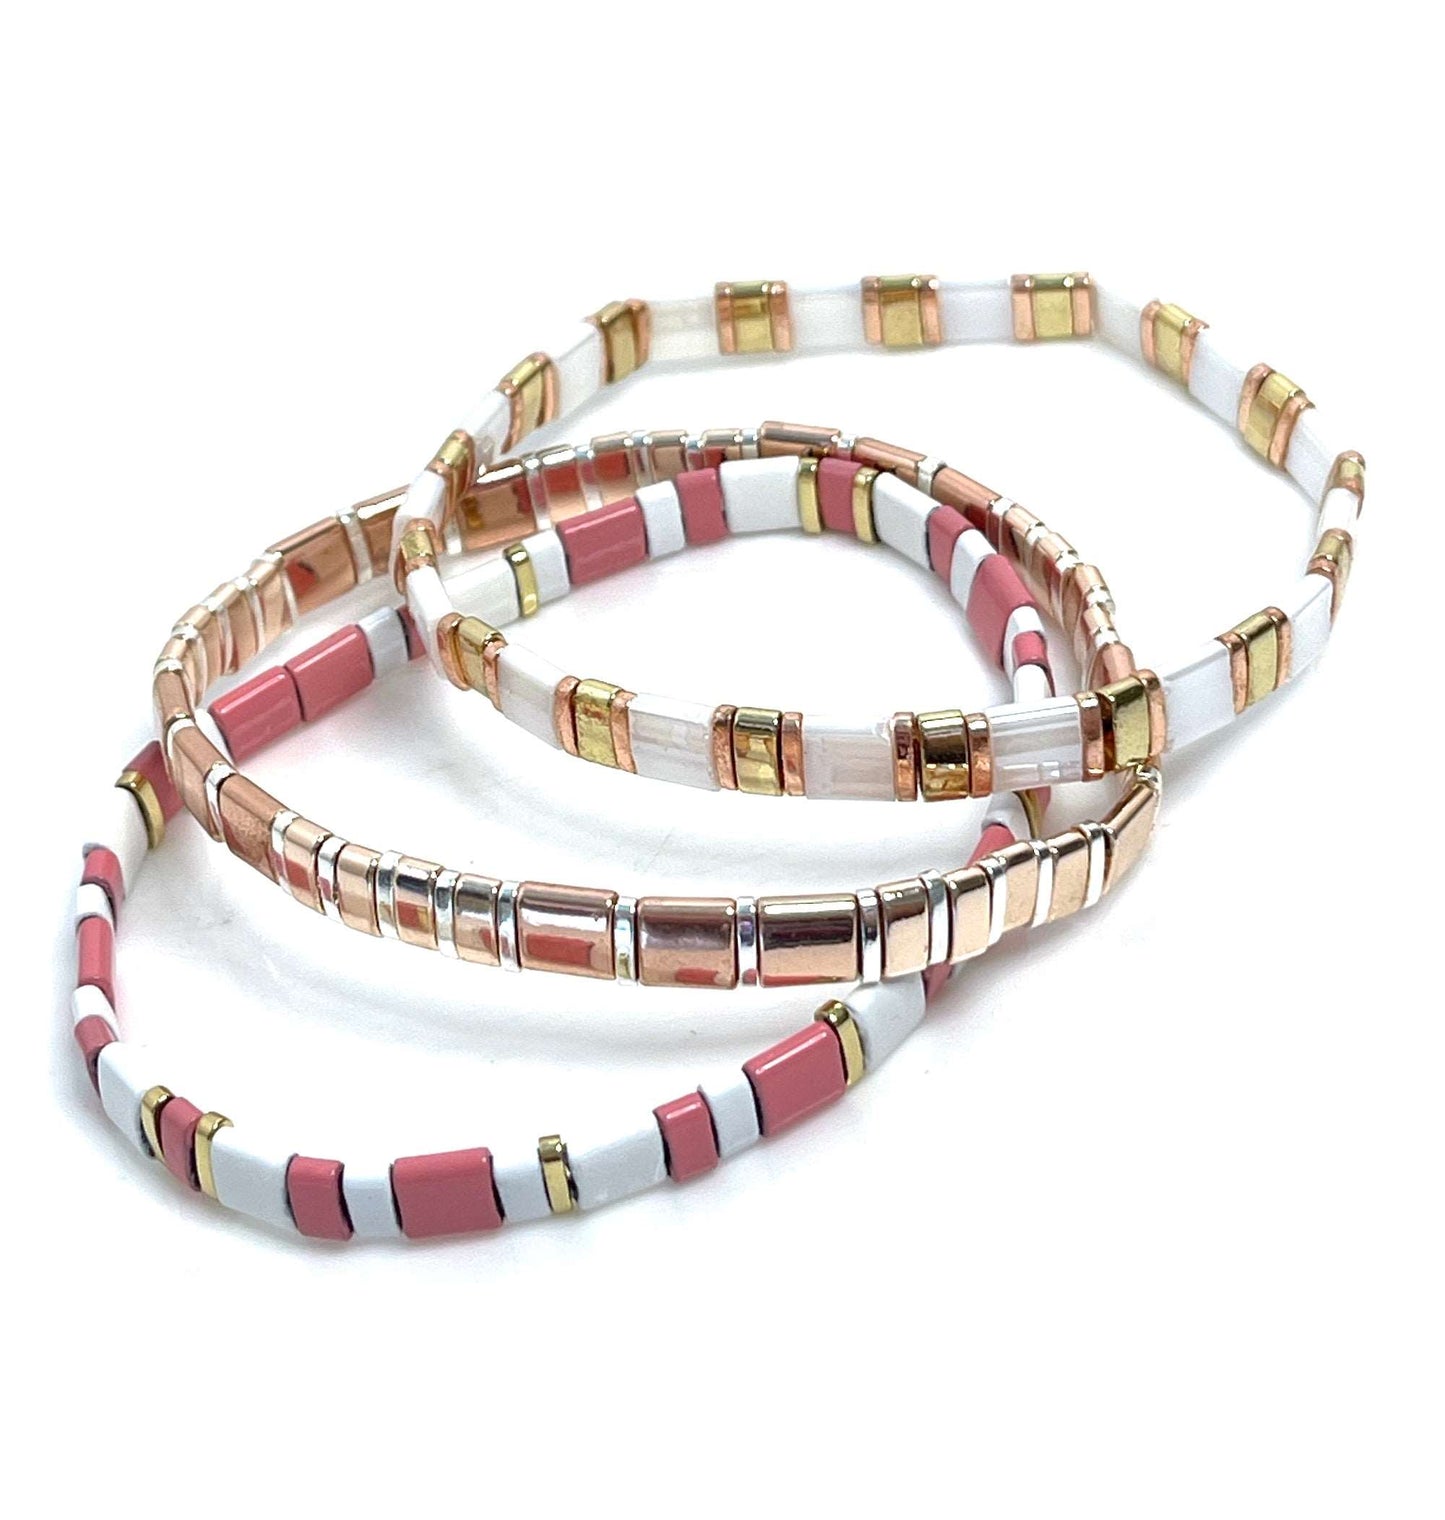 Set of 3 Japanese Tila Bracelets | Pink Rose Gold White | Stretch Tila Bracelets